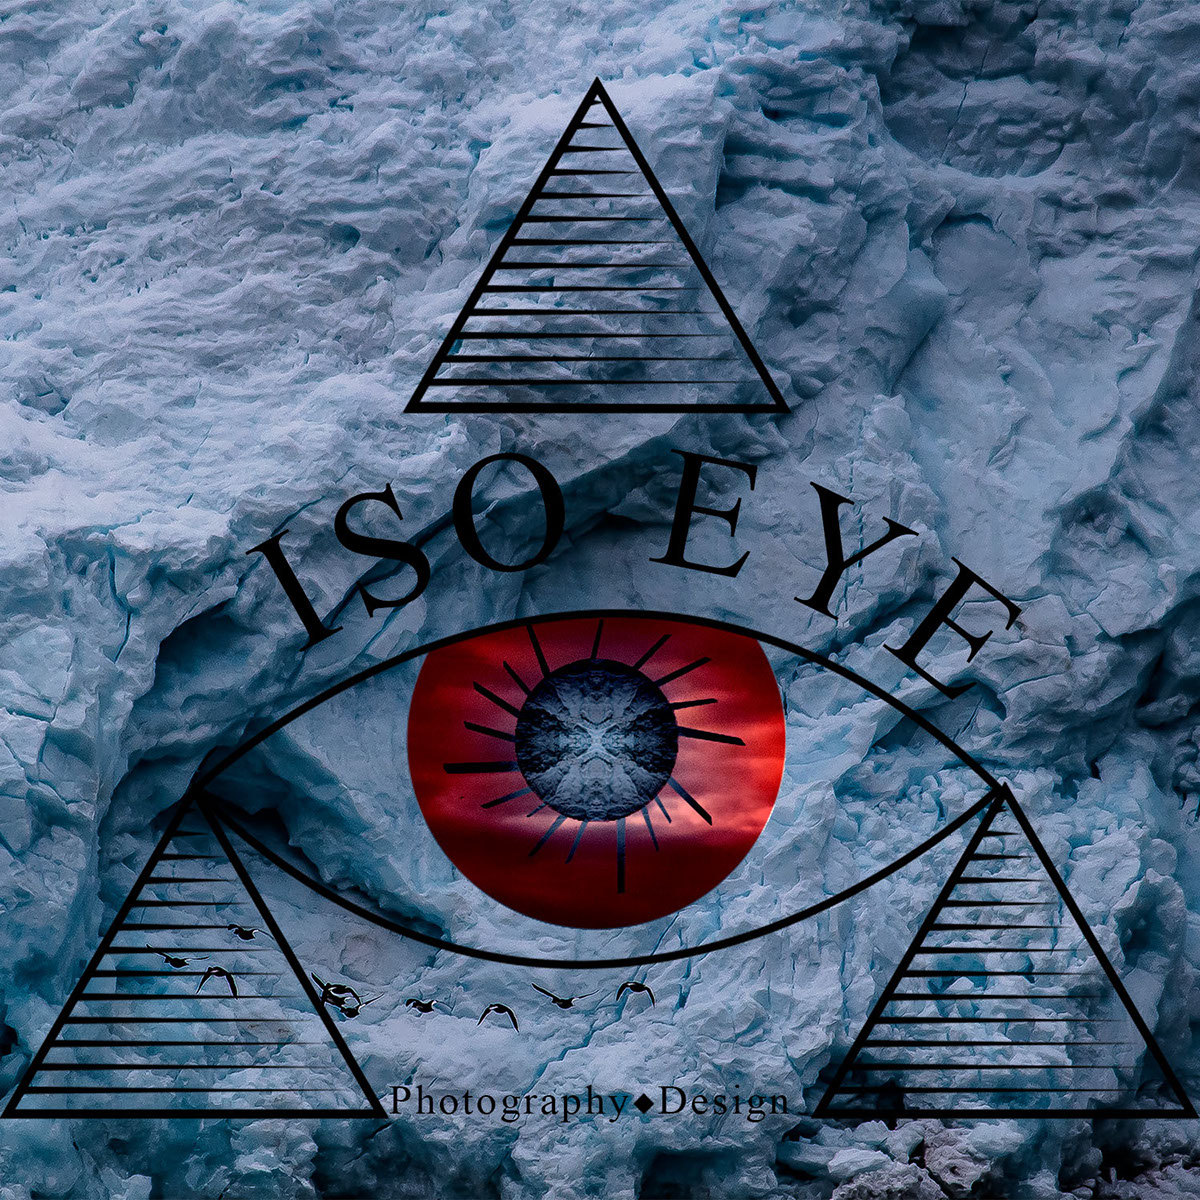 graphicdesign design glacier logo triangle